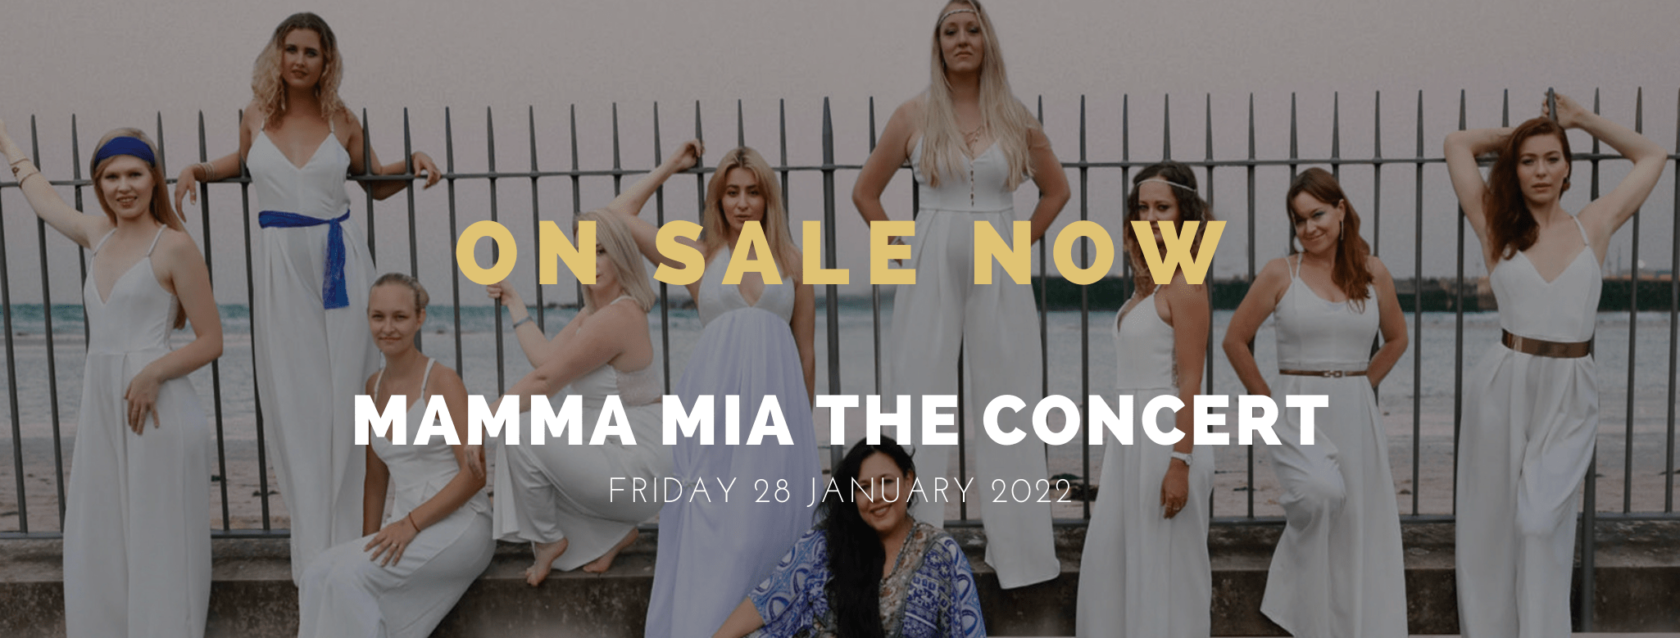 Mamma Mia the Concert